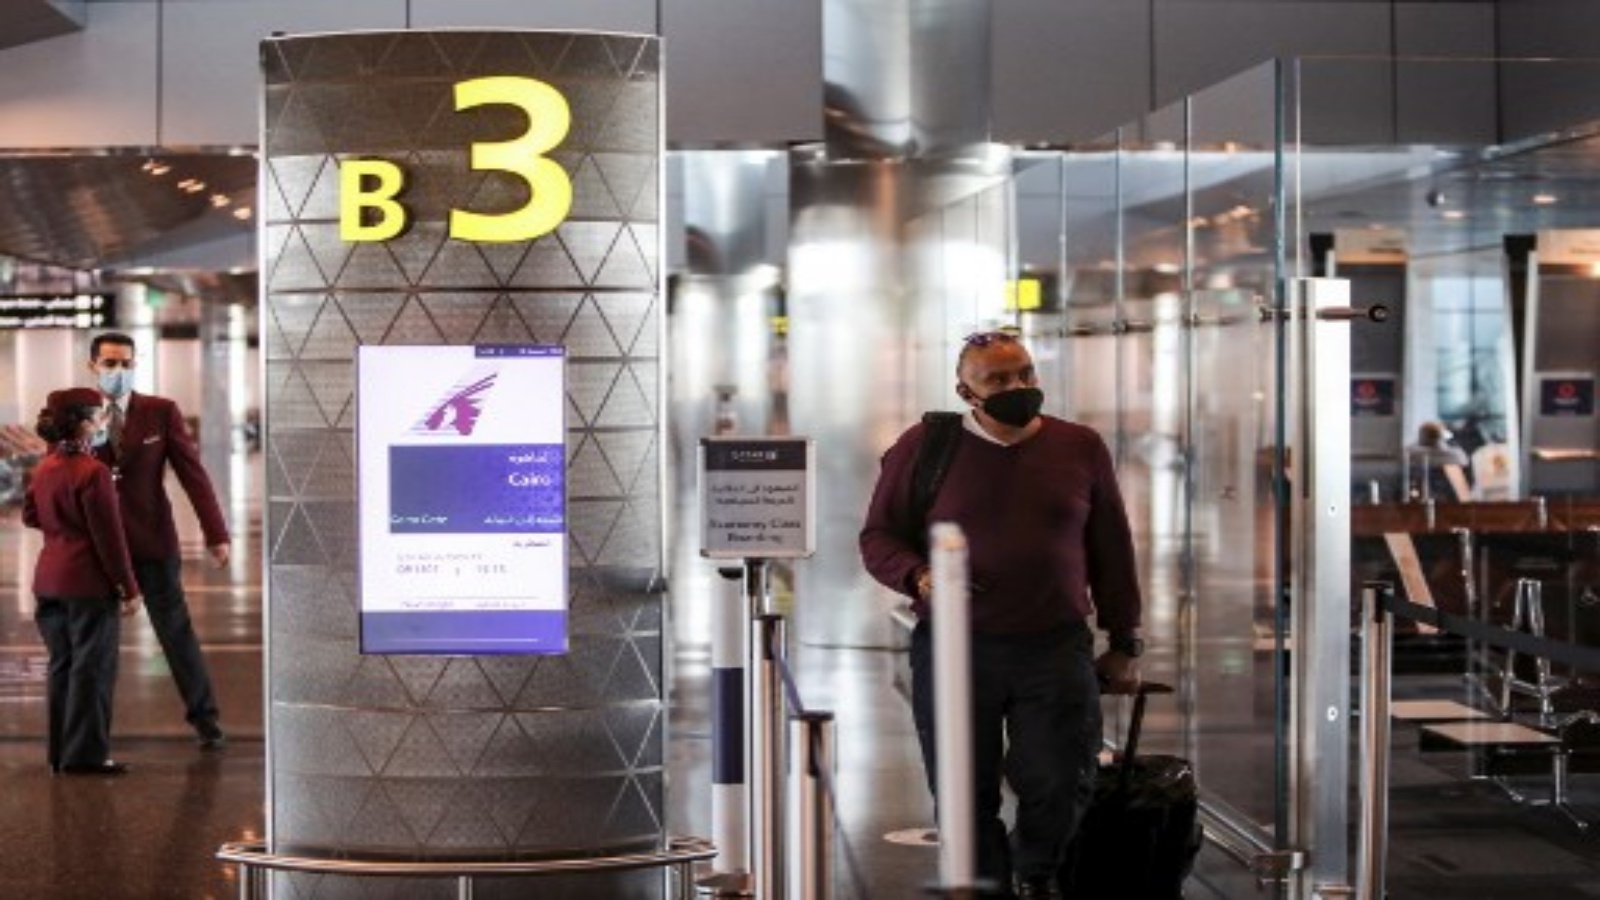 مسافر يرتدي قناعا يصل إلى البوابة على متن أول رحلة للخطوط الجوية القطرية متجهة إلى القاهرة بعد استئناف الرحلات بين قطر ومصر ، في مطار حمد الدولي في قطر بالقرب من العاصمة الدوحة في 18 يناير 2021